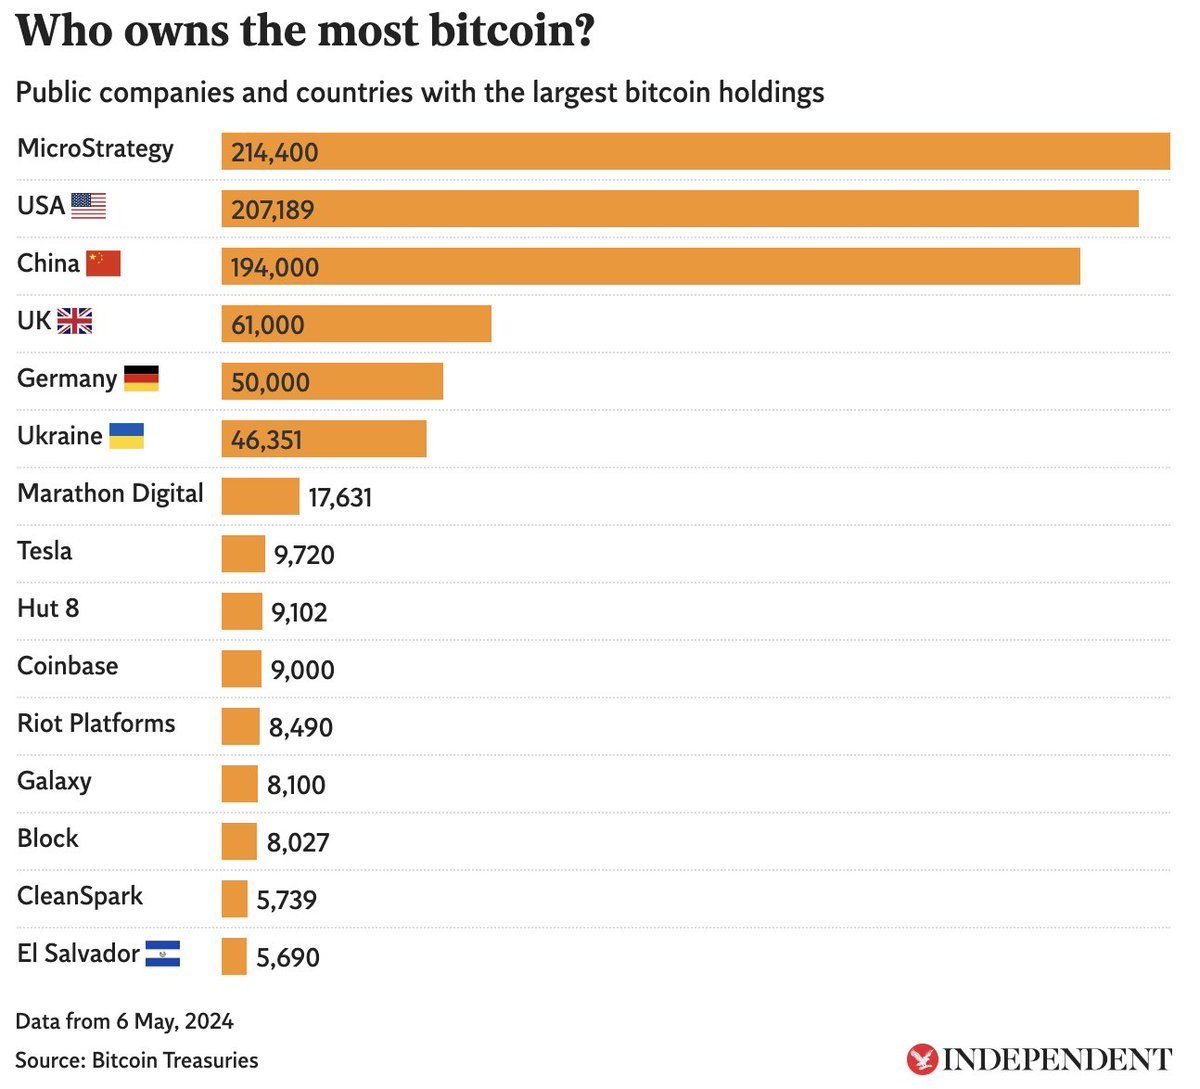 MicroStrategy, dünyadaki herhangi bir ülkeden daha fazla Bitcoin'e sahip.